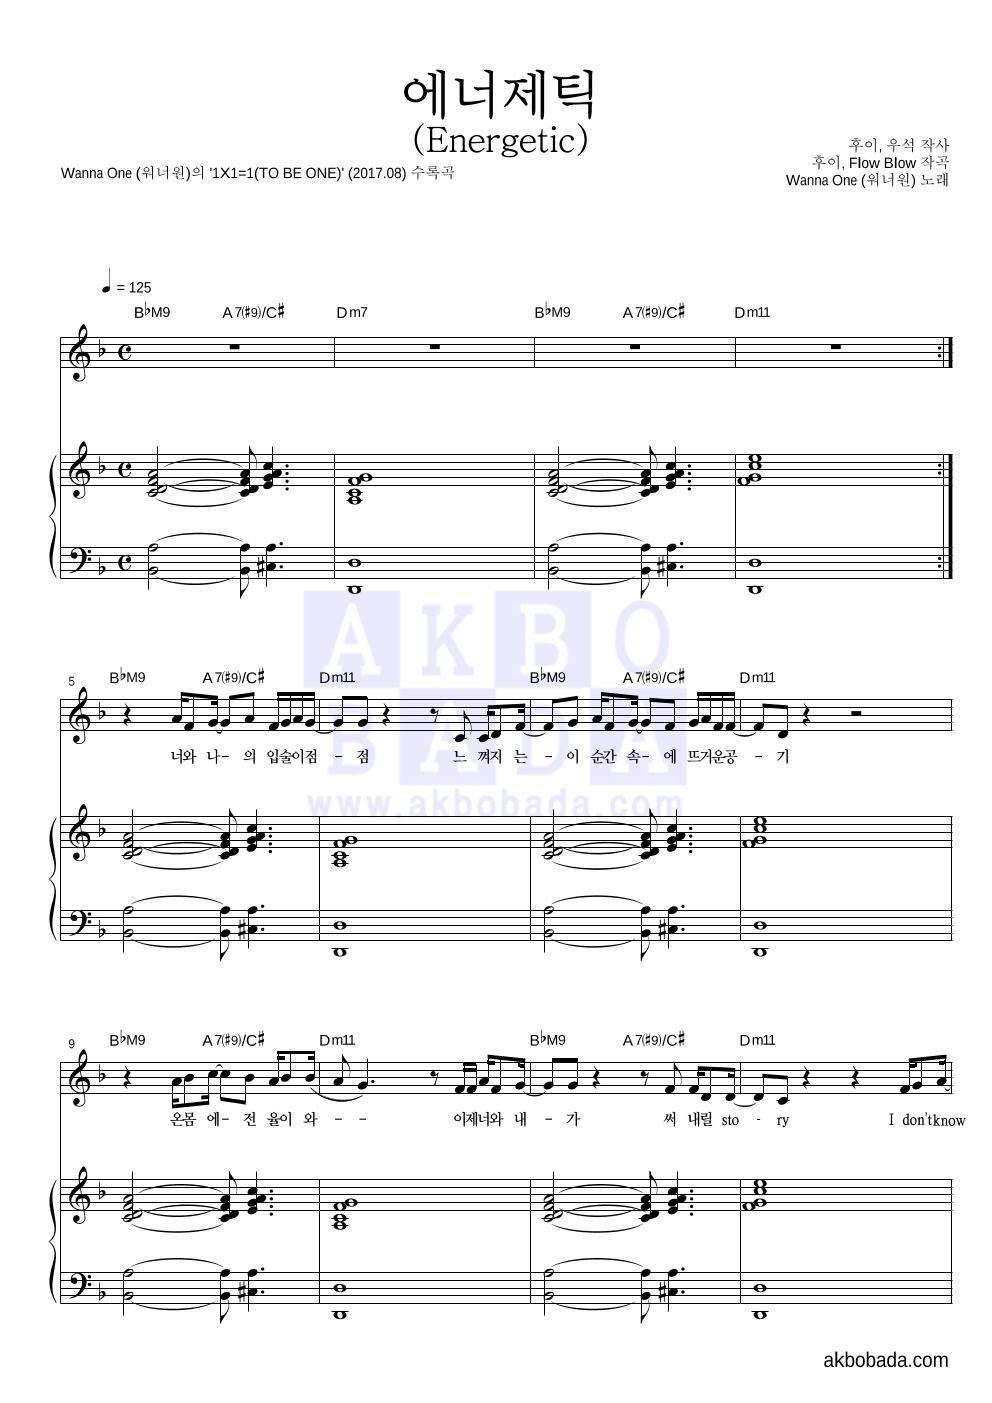 워너원 - 에너제틱 (Energetic) 피아노 3단 악보 